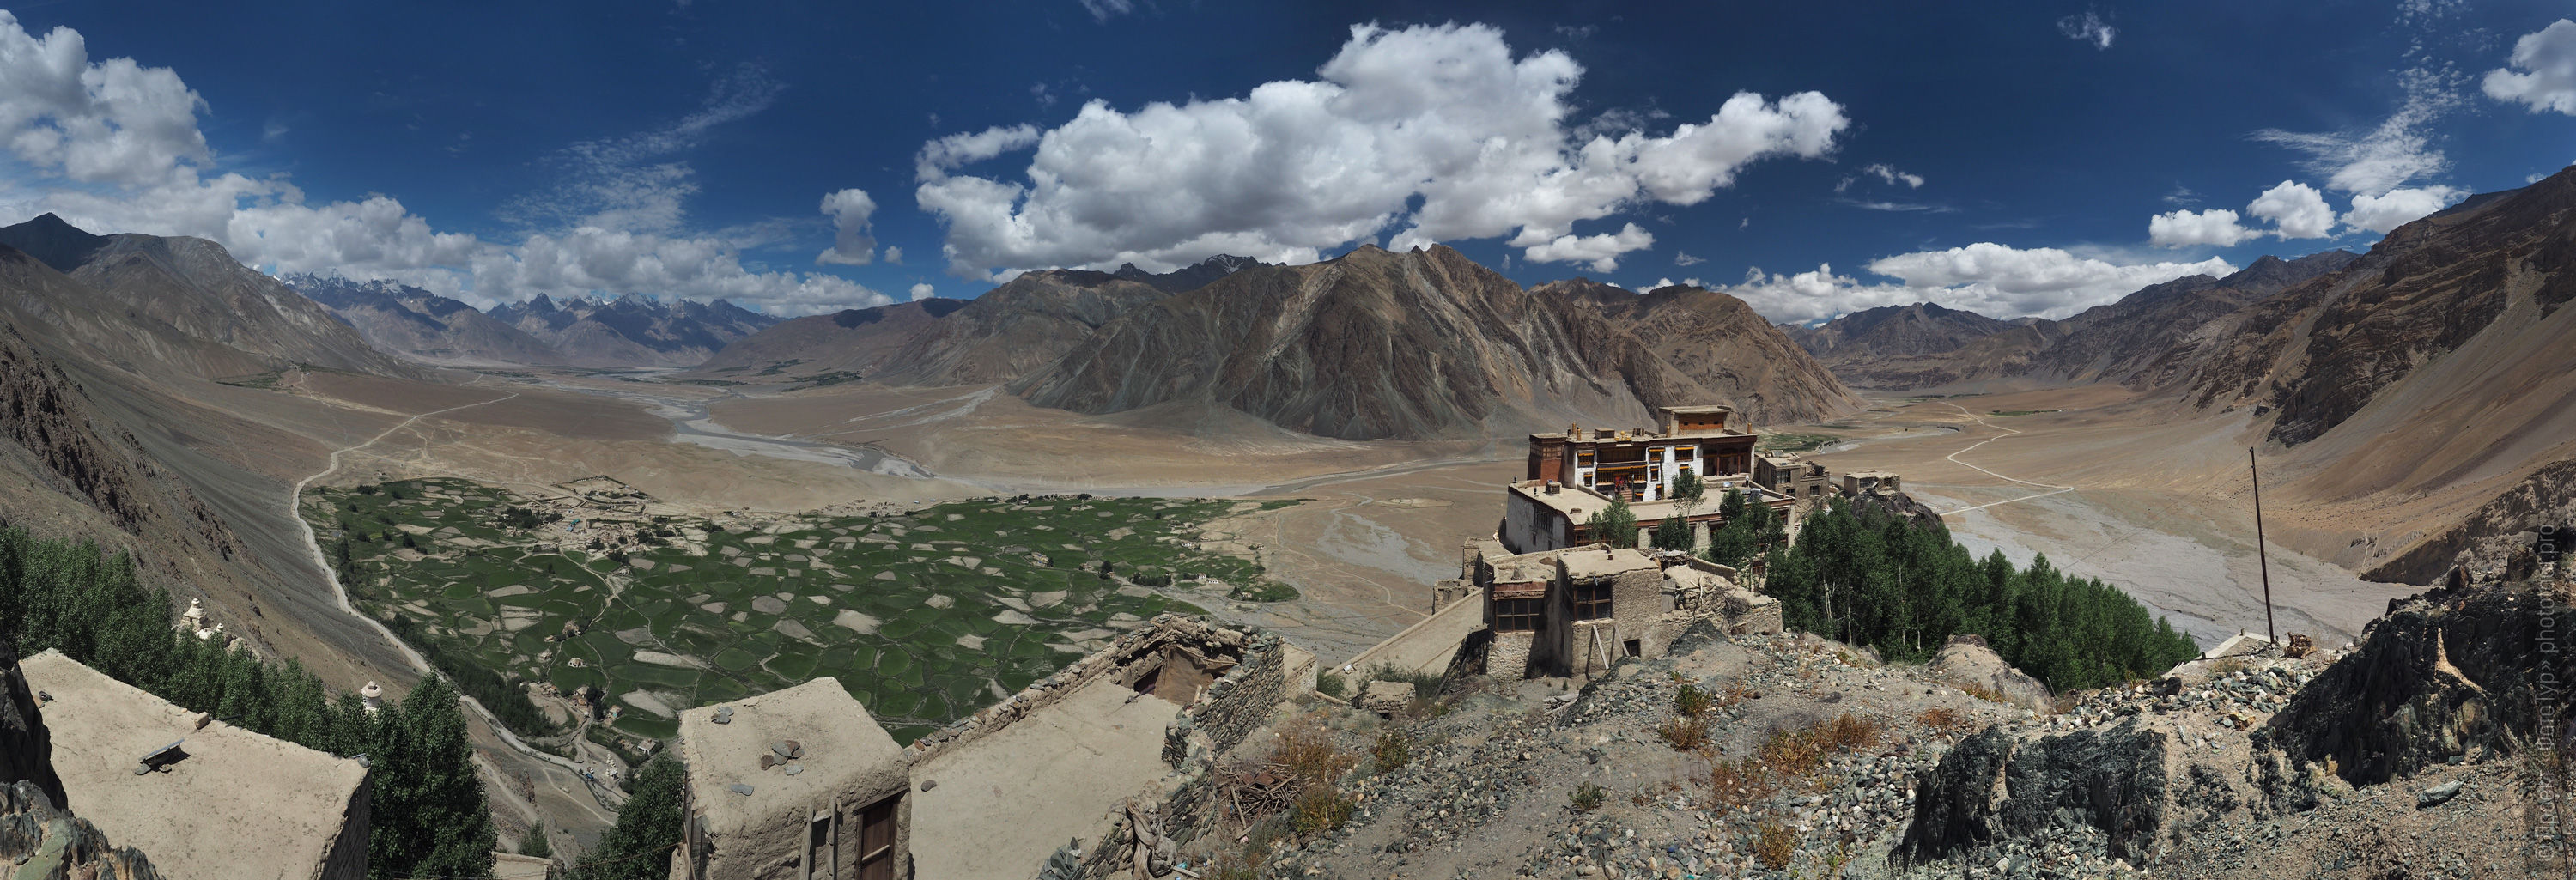 Zangla Valley. Budget photo tour Legends of Tibet: Zanskar, September 15 - September 26, 2021.